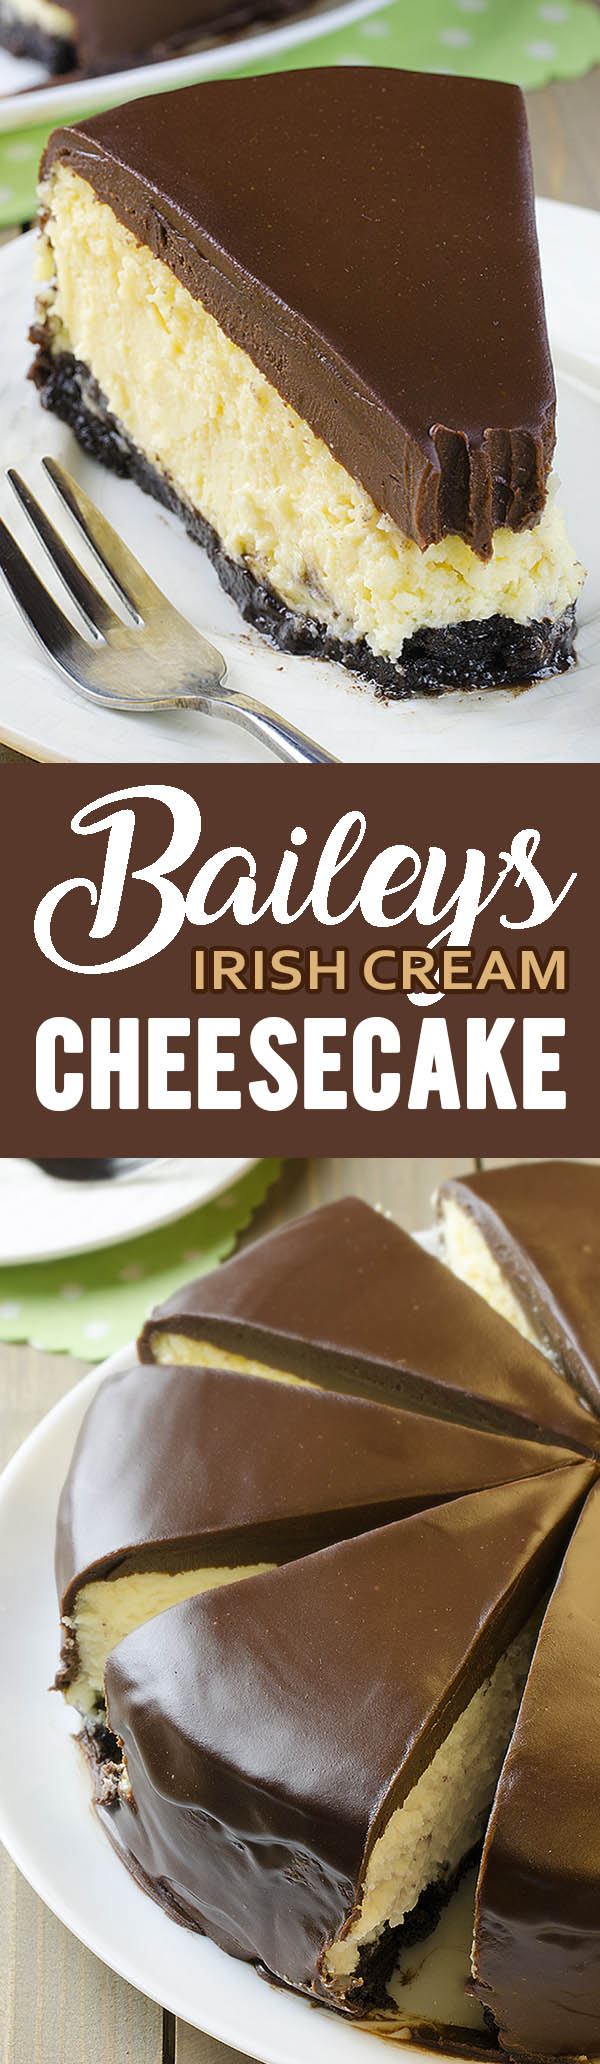 baileys irish cream cheesecake